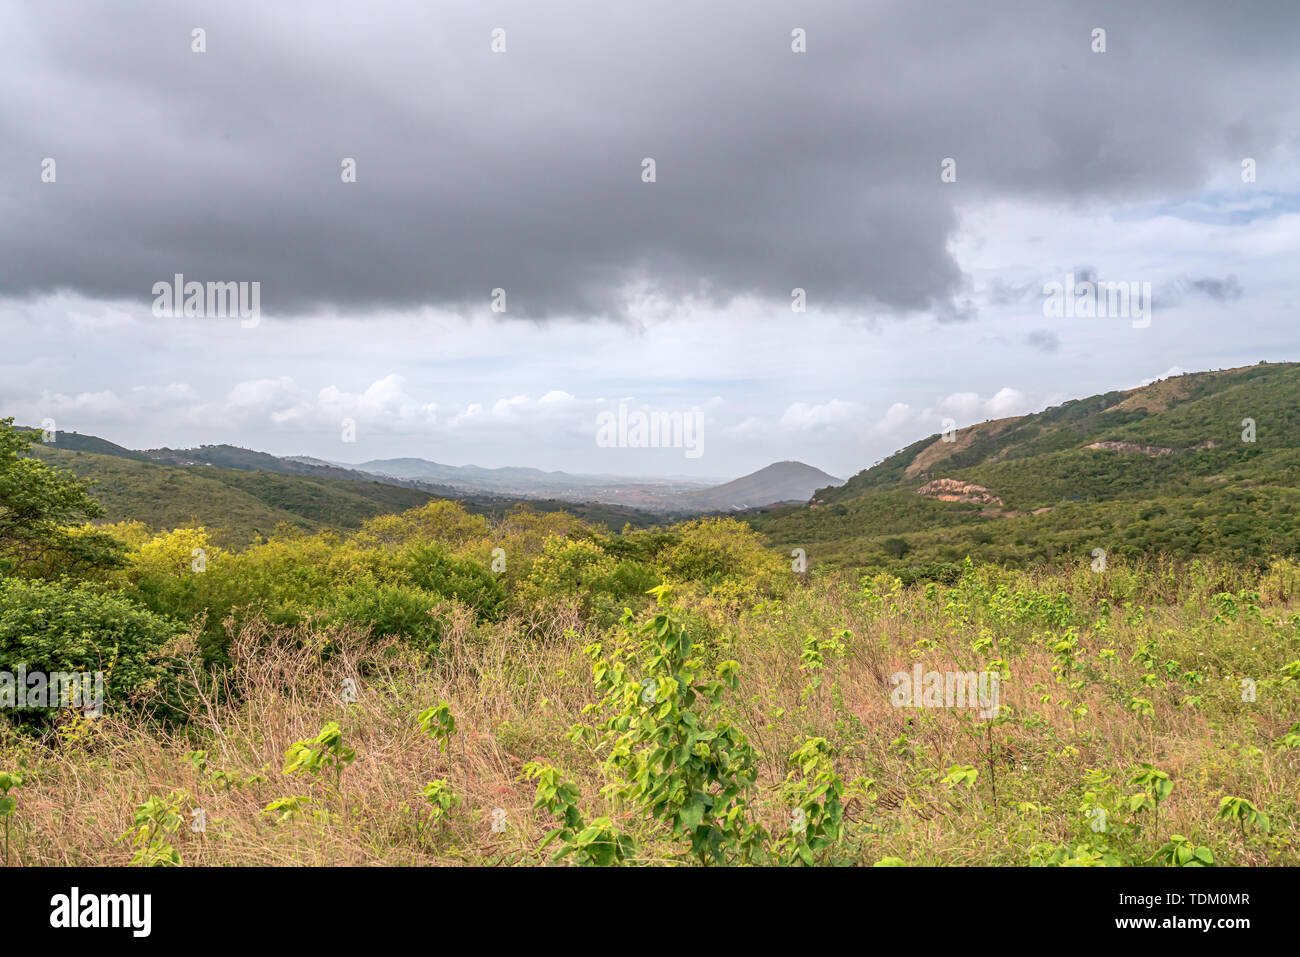 Gravatá, Pernambuco, Brasilien - Juni, 2019: Schöne Aussicht auf grünen Feldern, in der Nähe der Brücke von Serra das russas bei BR-232. Stockfoto